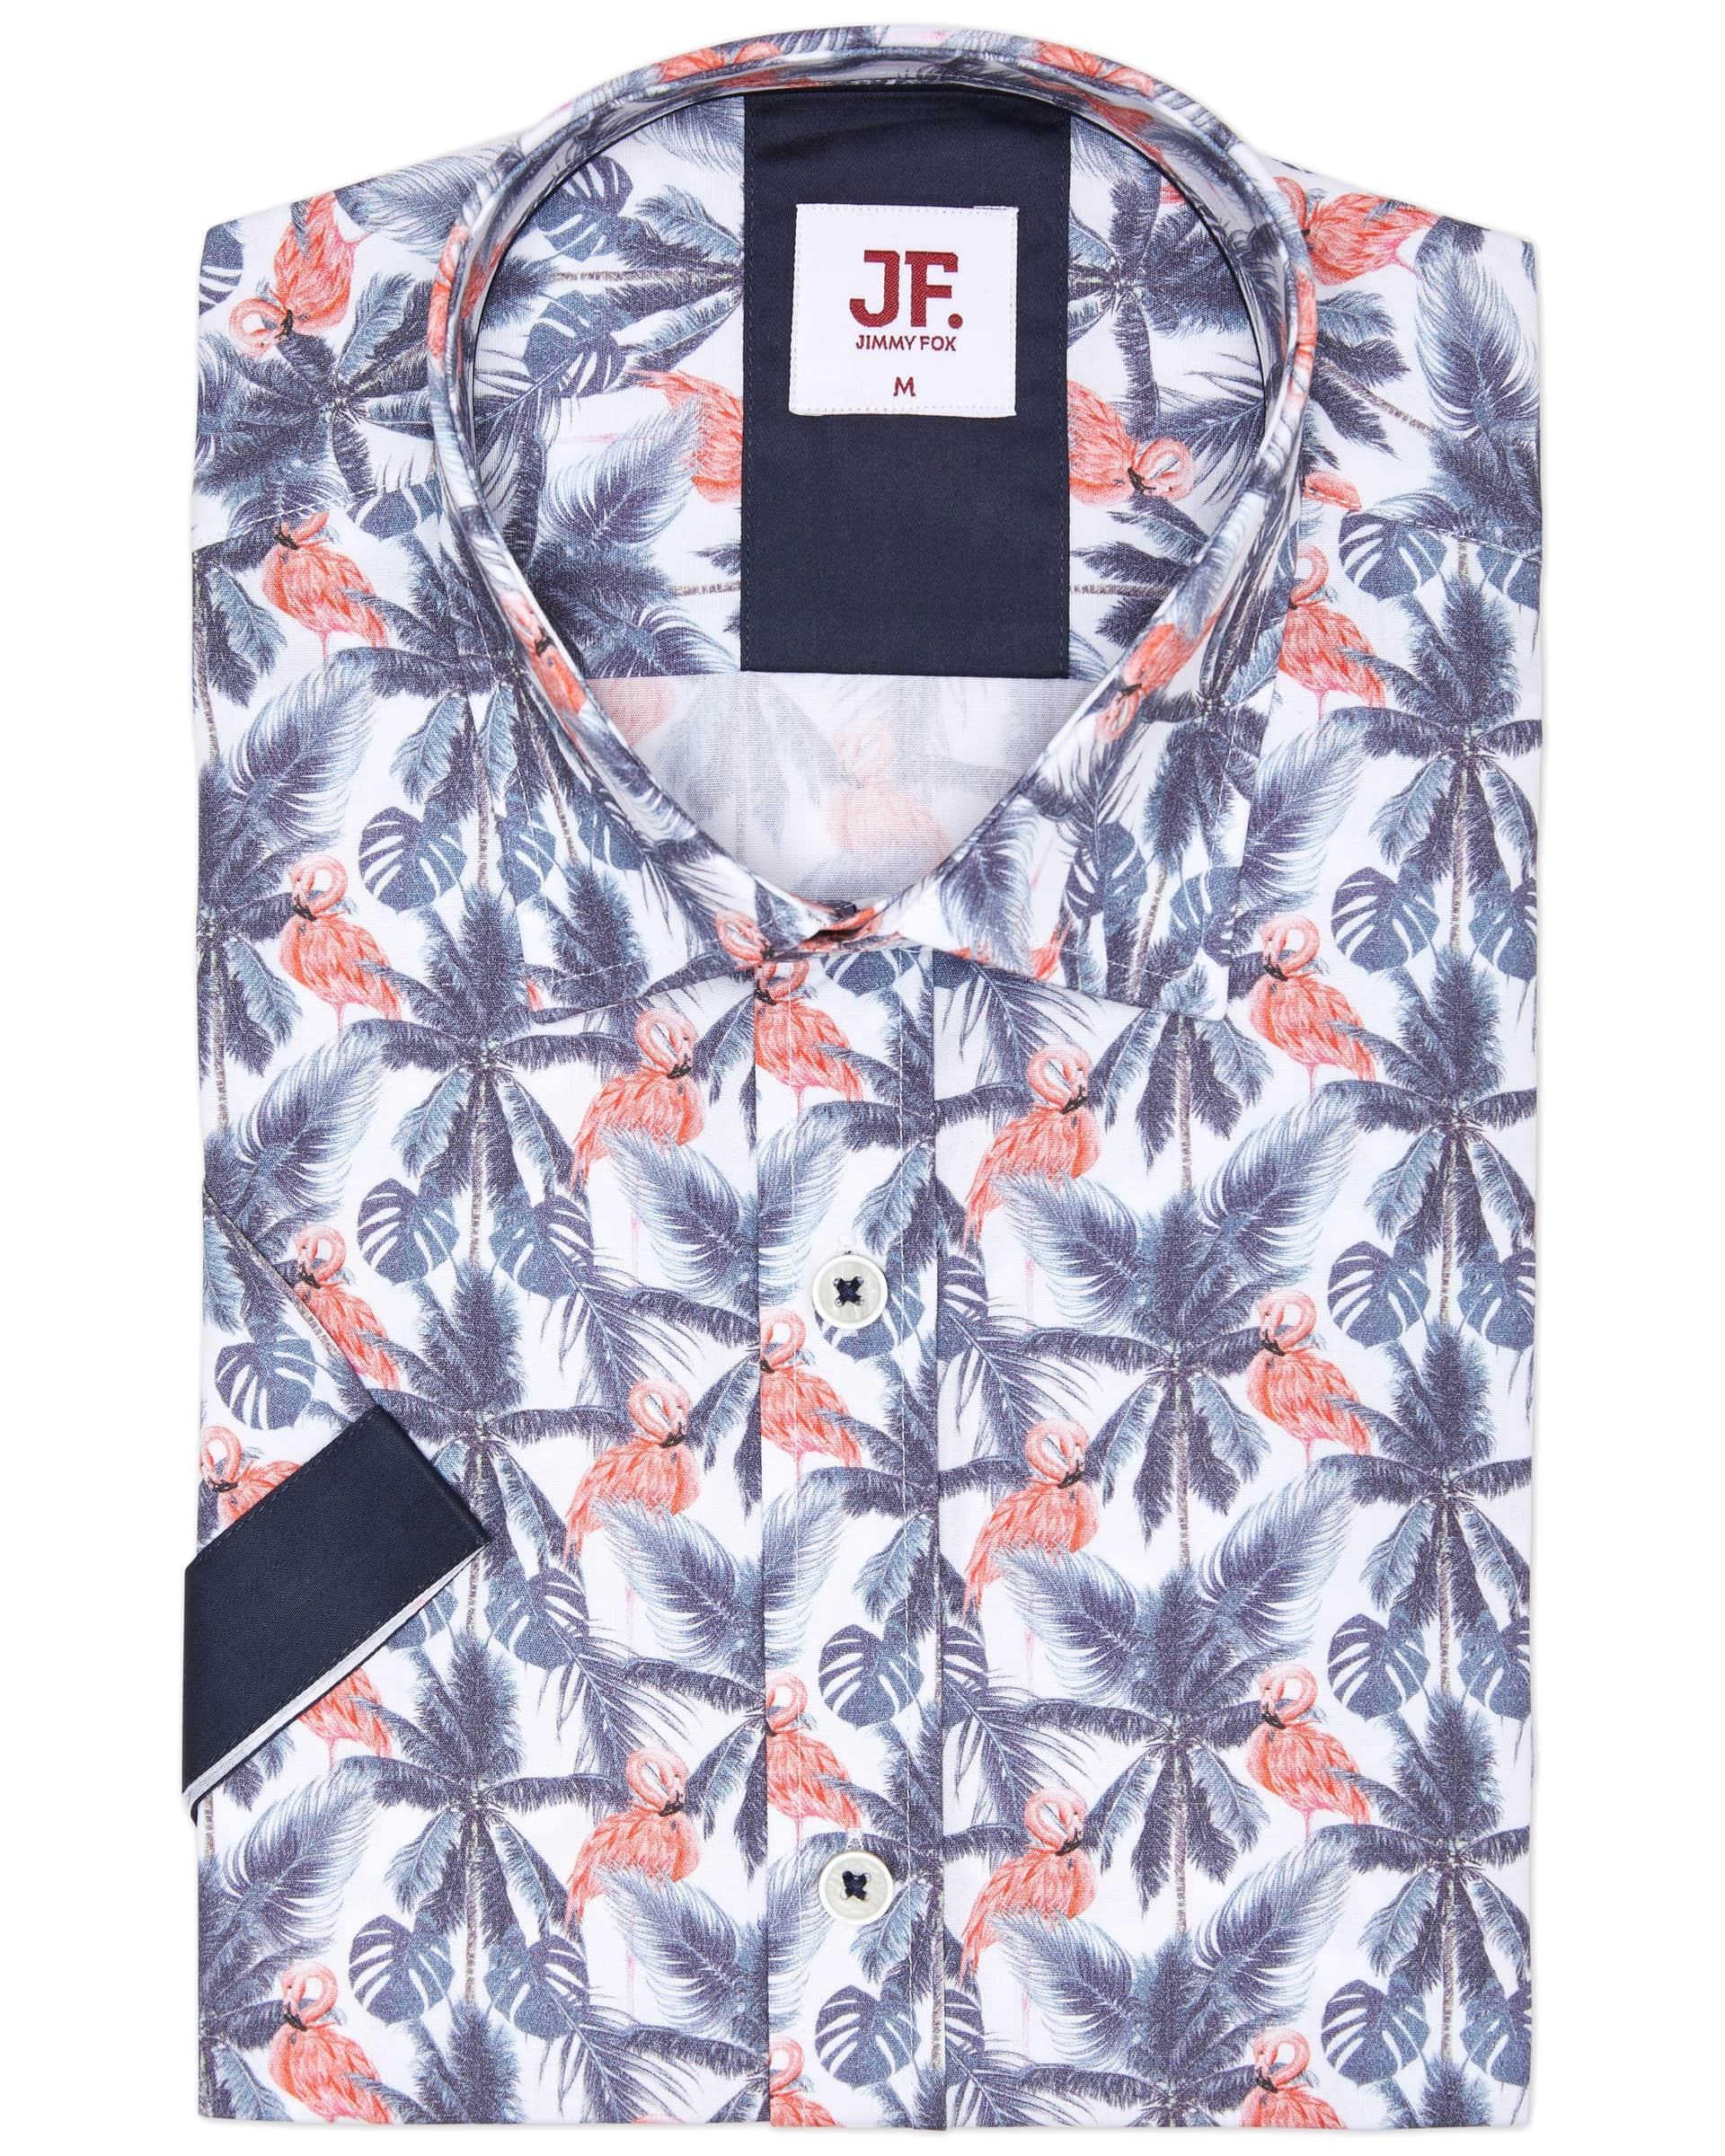 Jimmy Fox S/S Shirt - Men's Short Sleeve Shirts at Menzclub